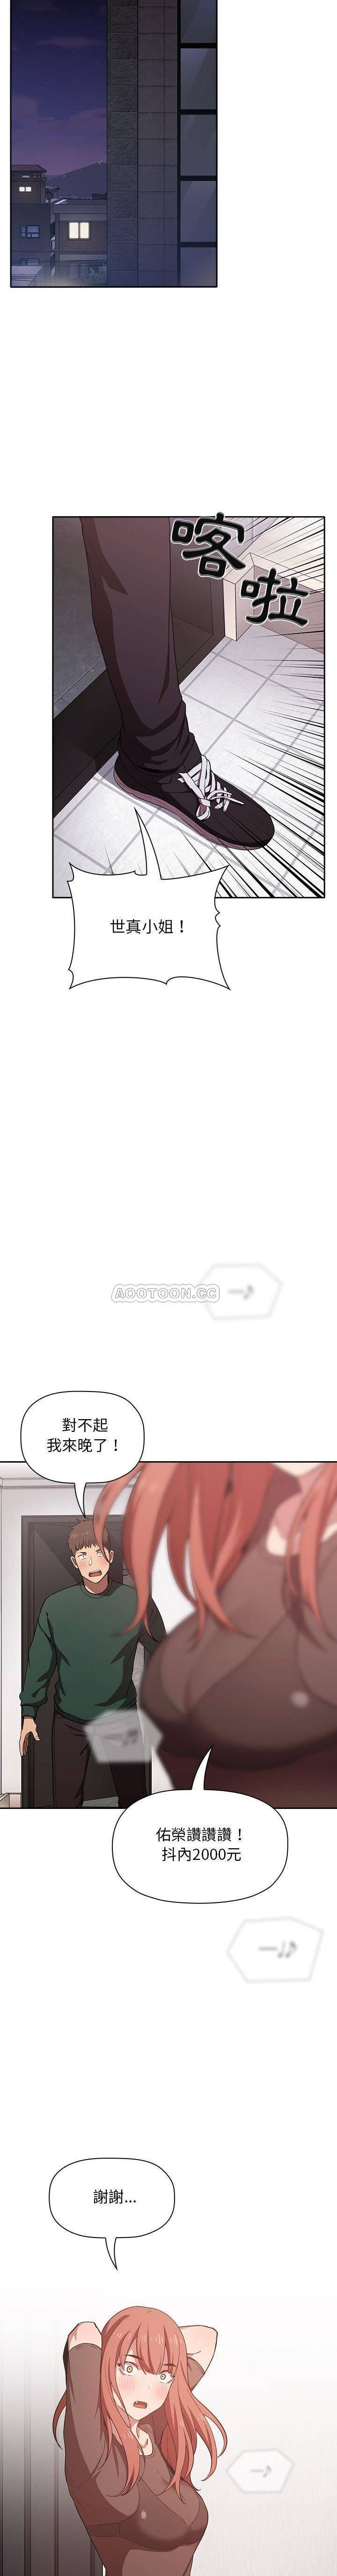 韩国污漫画 BJ的夢幻直播 第18话 20